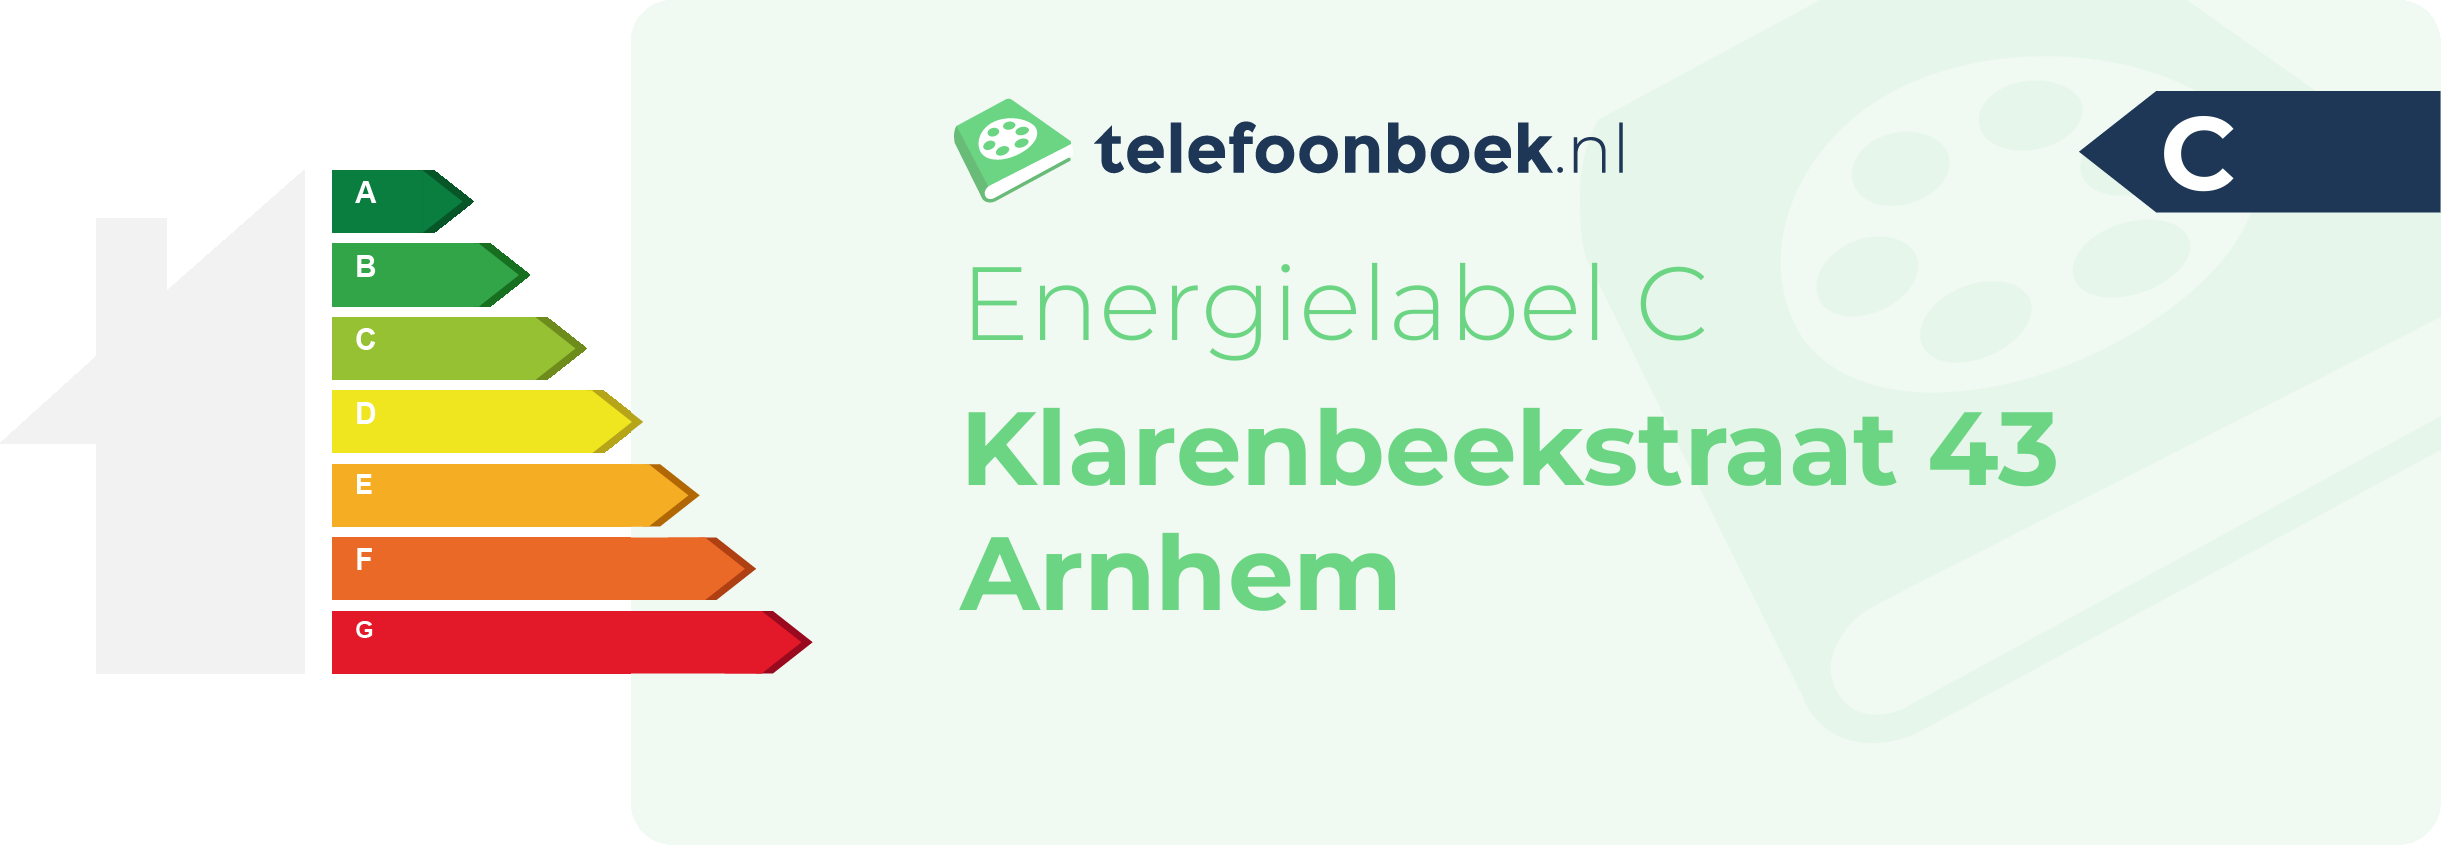 Energielabel Klarenbeekstraat 43 Arnhem